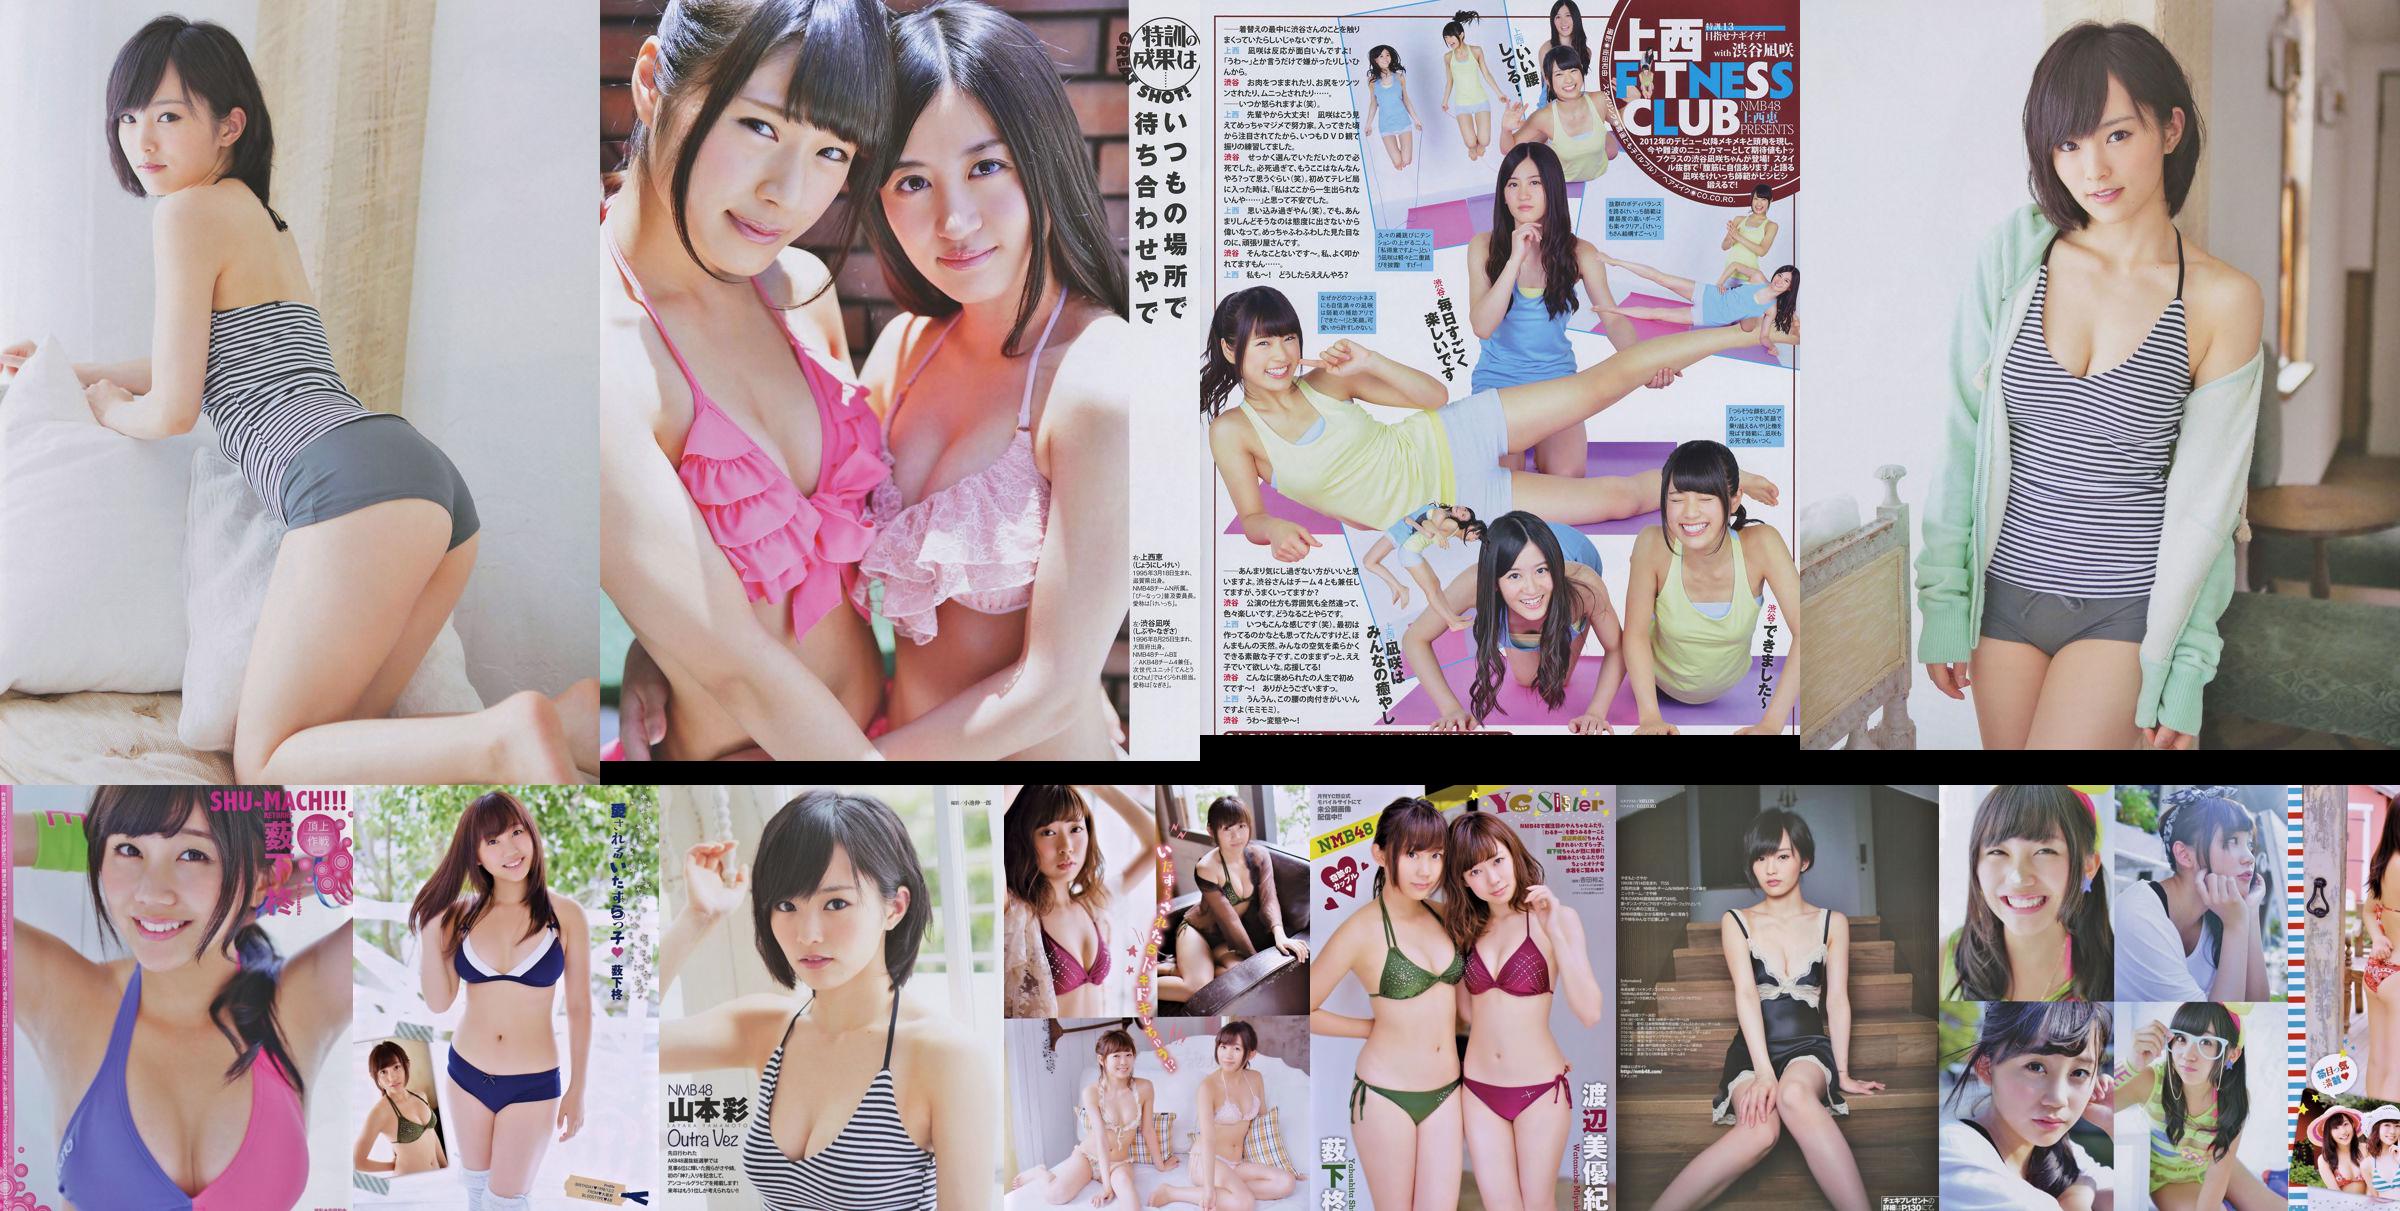 [Joven Campeona Retsu] Shu Yabushita Miyuki Watanabe 2014 No.10 Fotografía No.8a544f Página 2